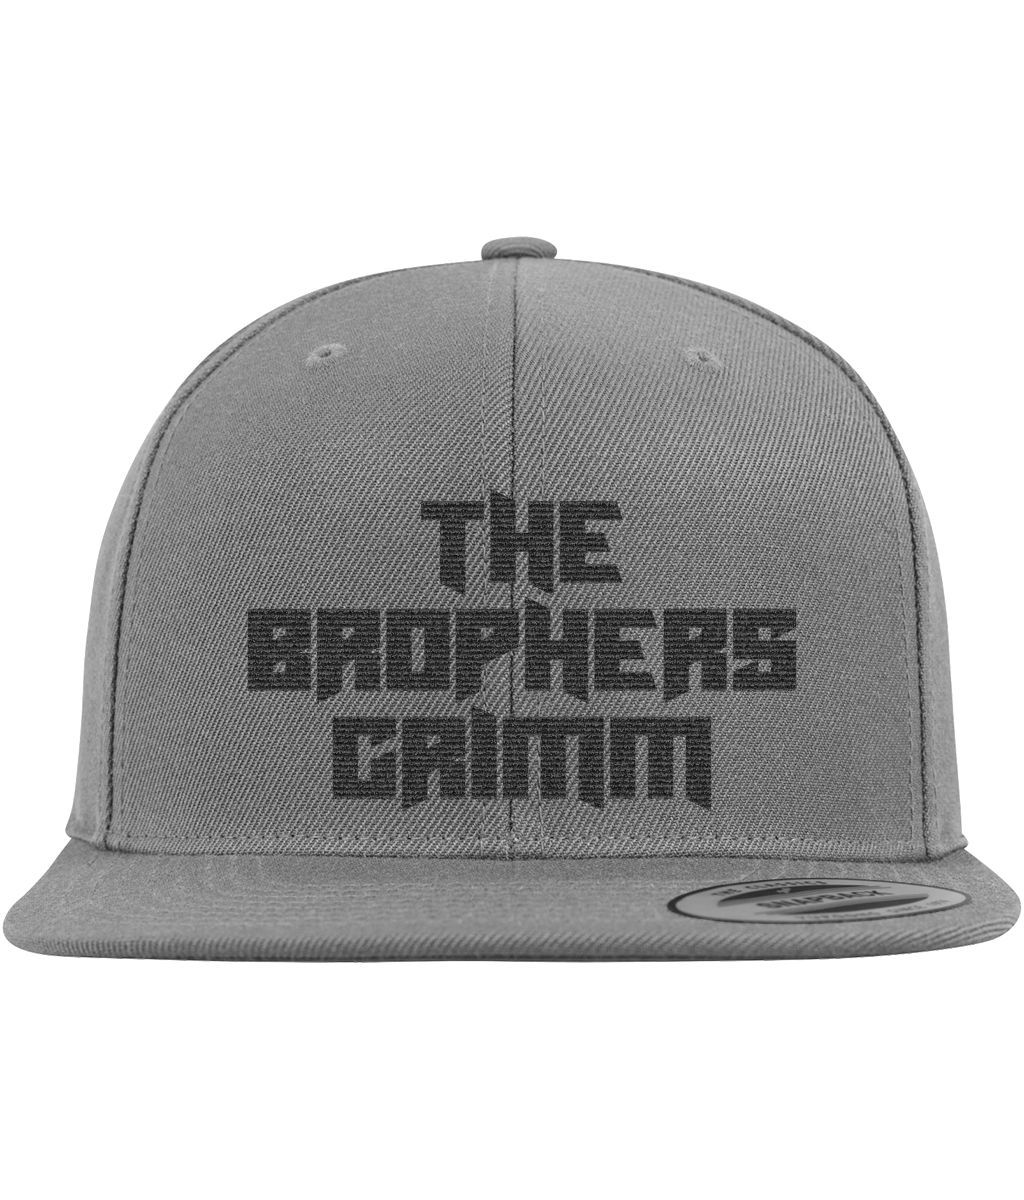 The Brophers Grimm Premium Classic Snapback Cap